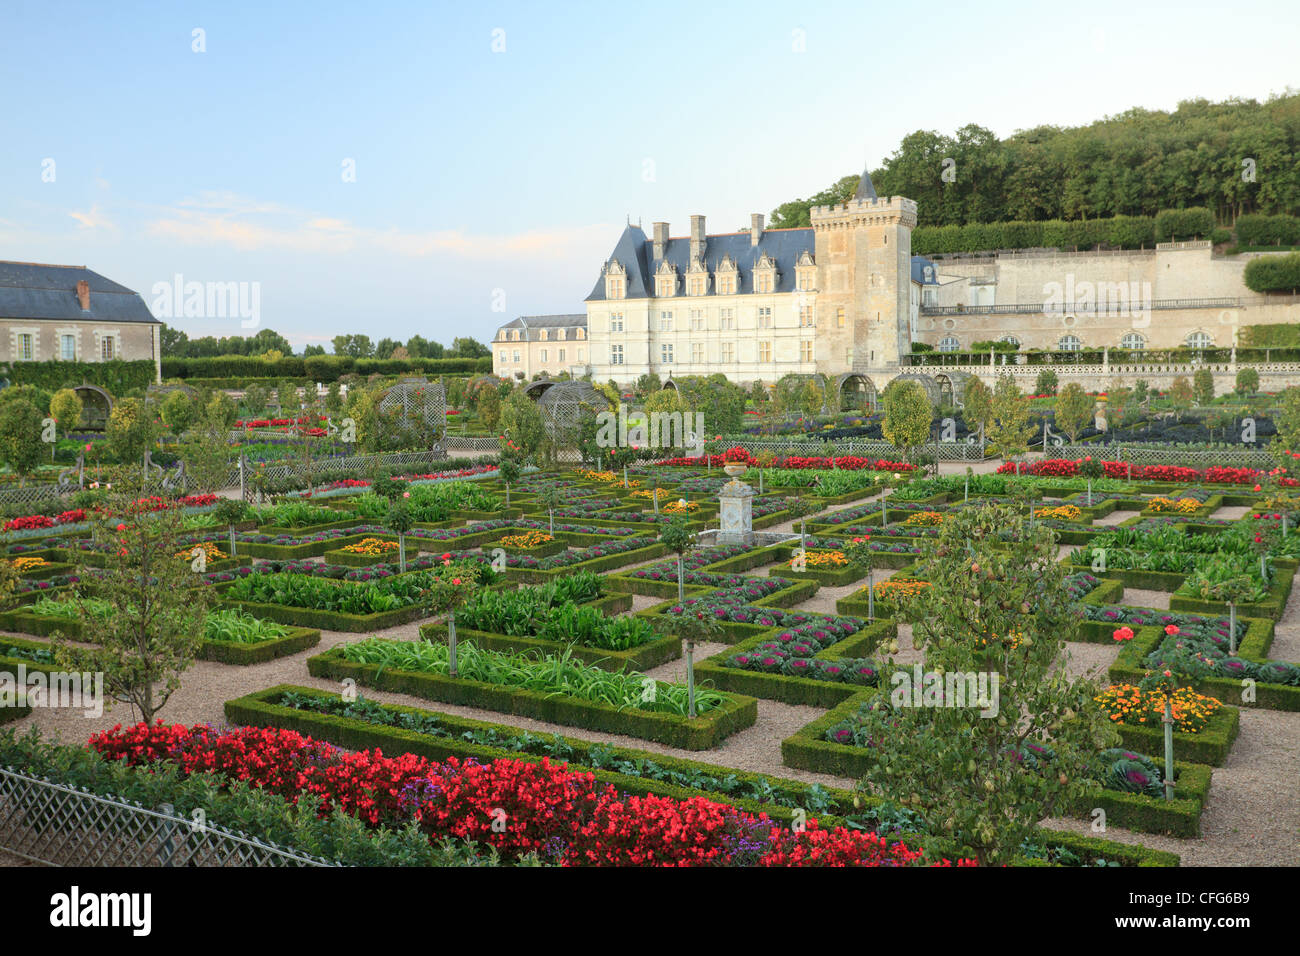 Frankreich, Gärten von Villandry Burg, der Küchengarten behandelt wie ein "Jardin à la Française" und das Schloss. Stockfoto